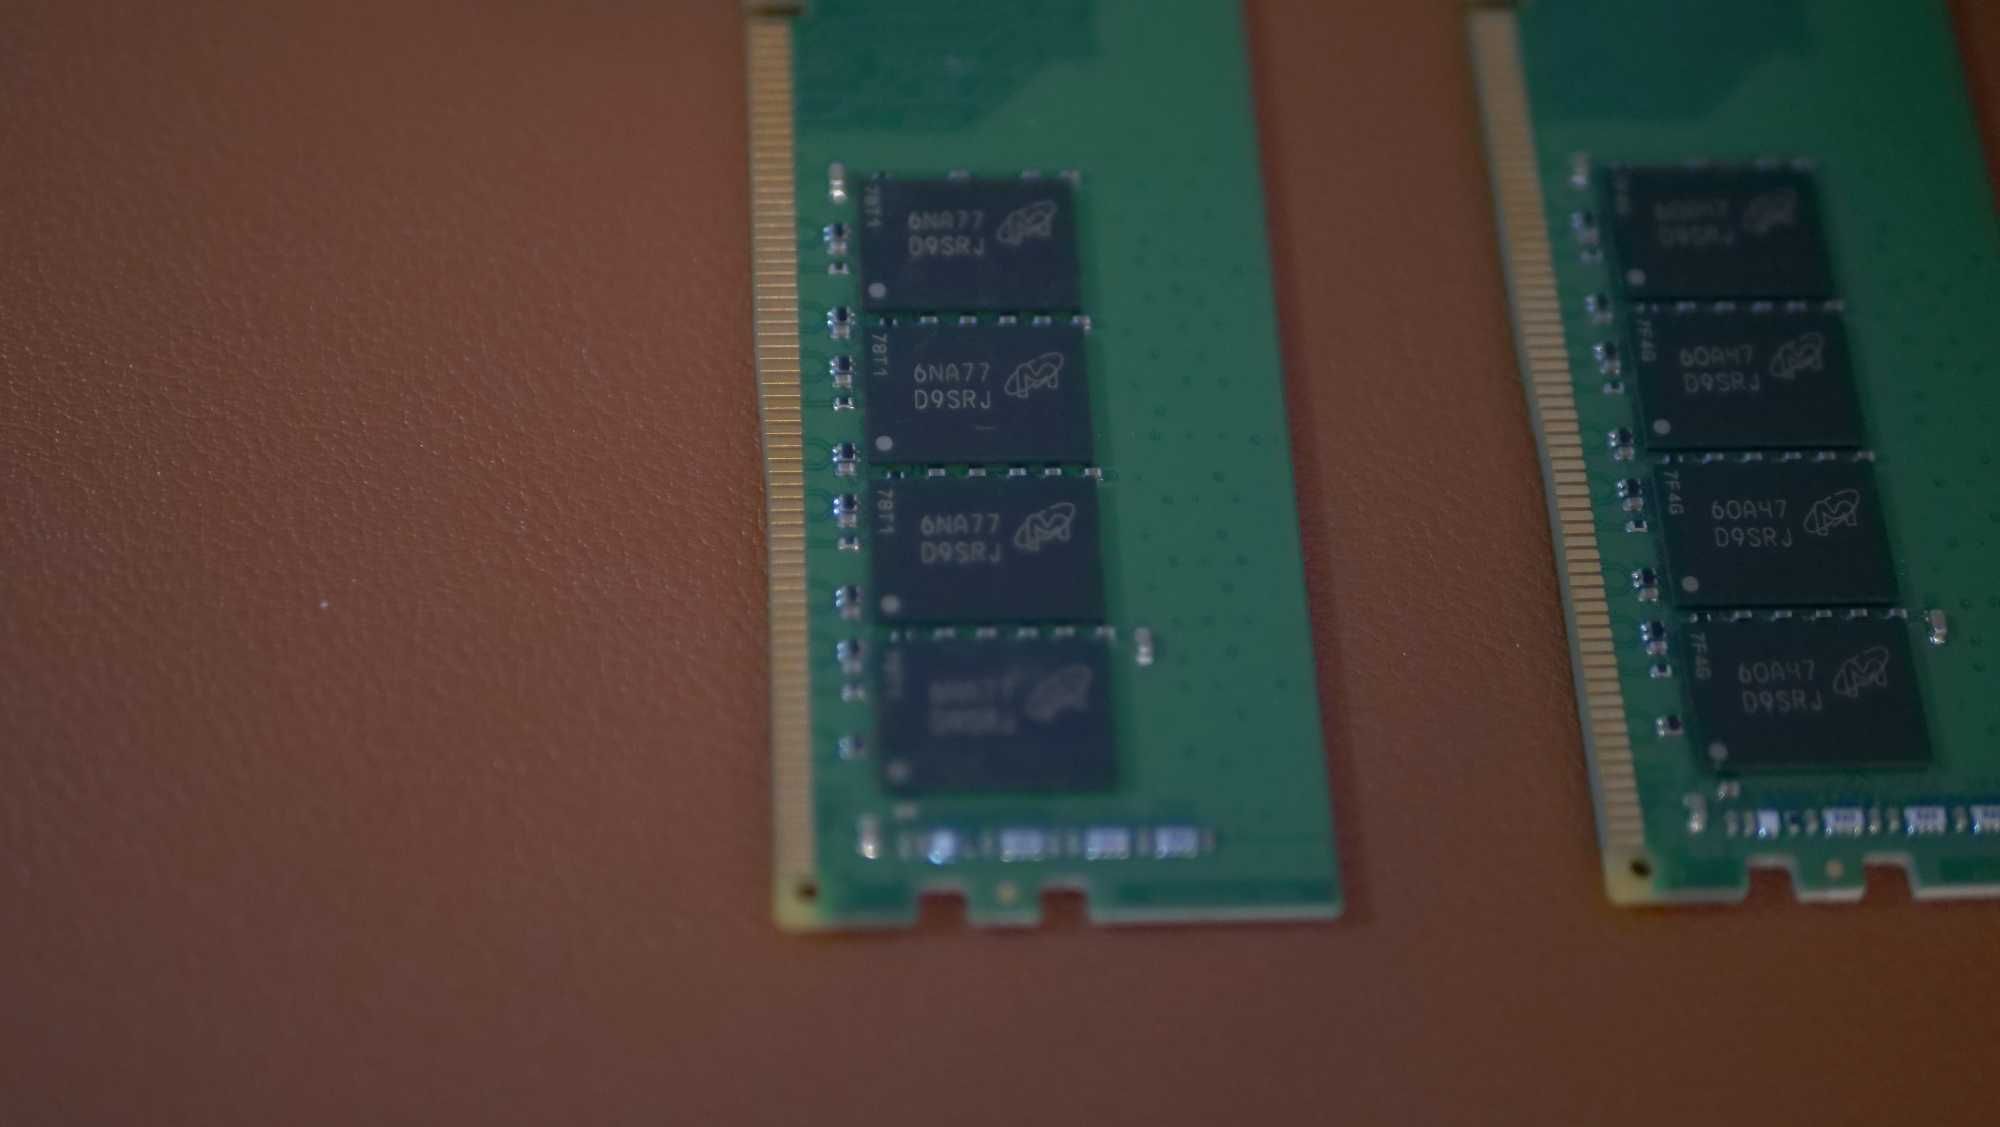 2 x 8Gb Memorie Ram Kingston (KVR21N15S8/8), DDR4 2133MHz Non-ECC